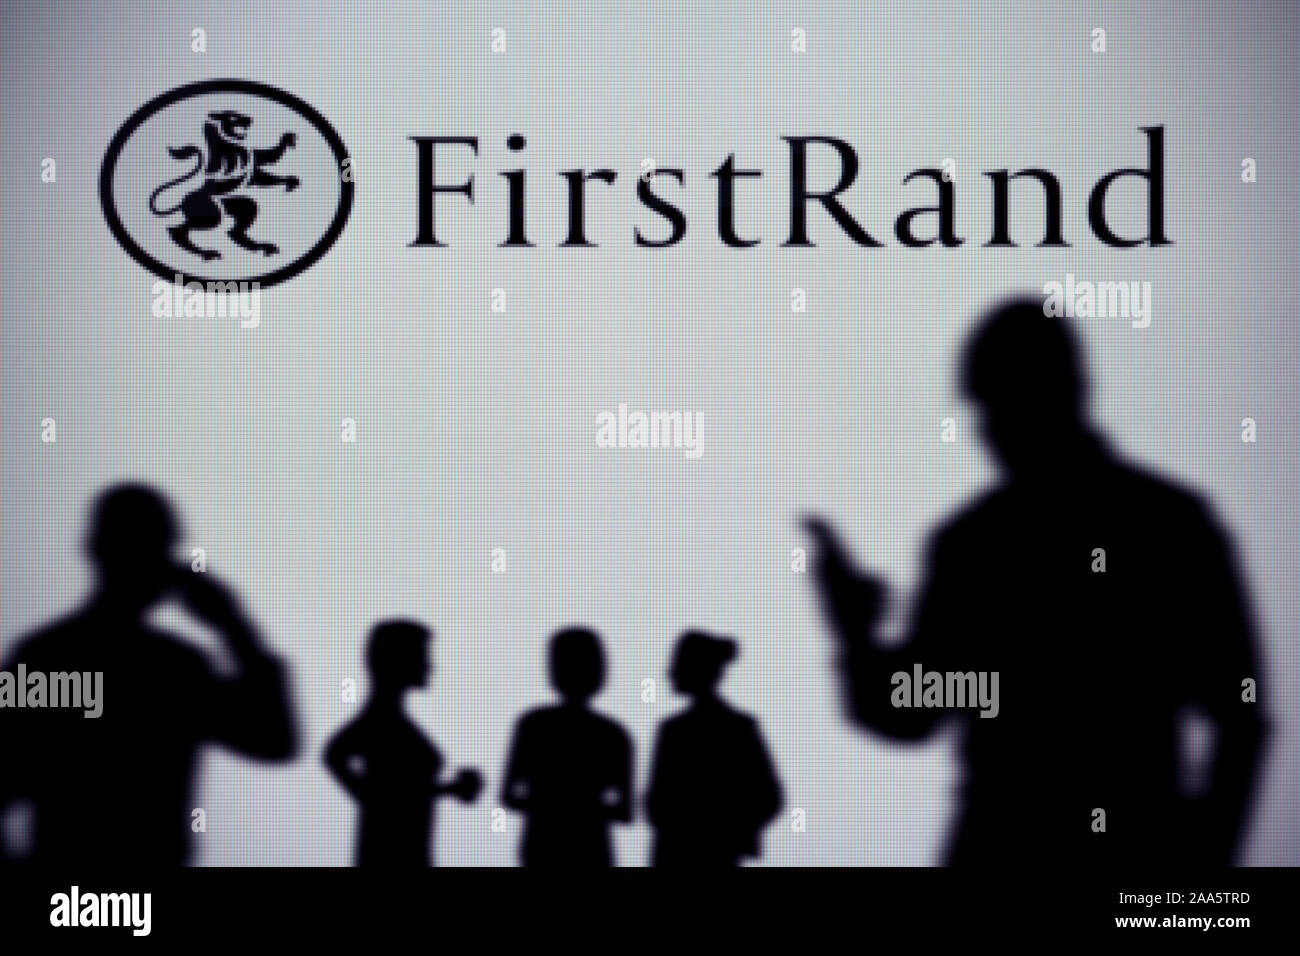 La banca FirstRand logo è visibile su uno schermo a LED in background mentre si profila una persona utilizza uno smartphone (solo uso editoriale) Foto Stock